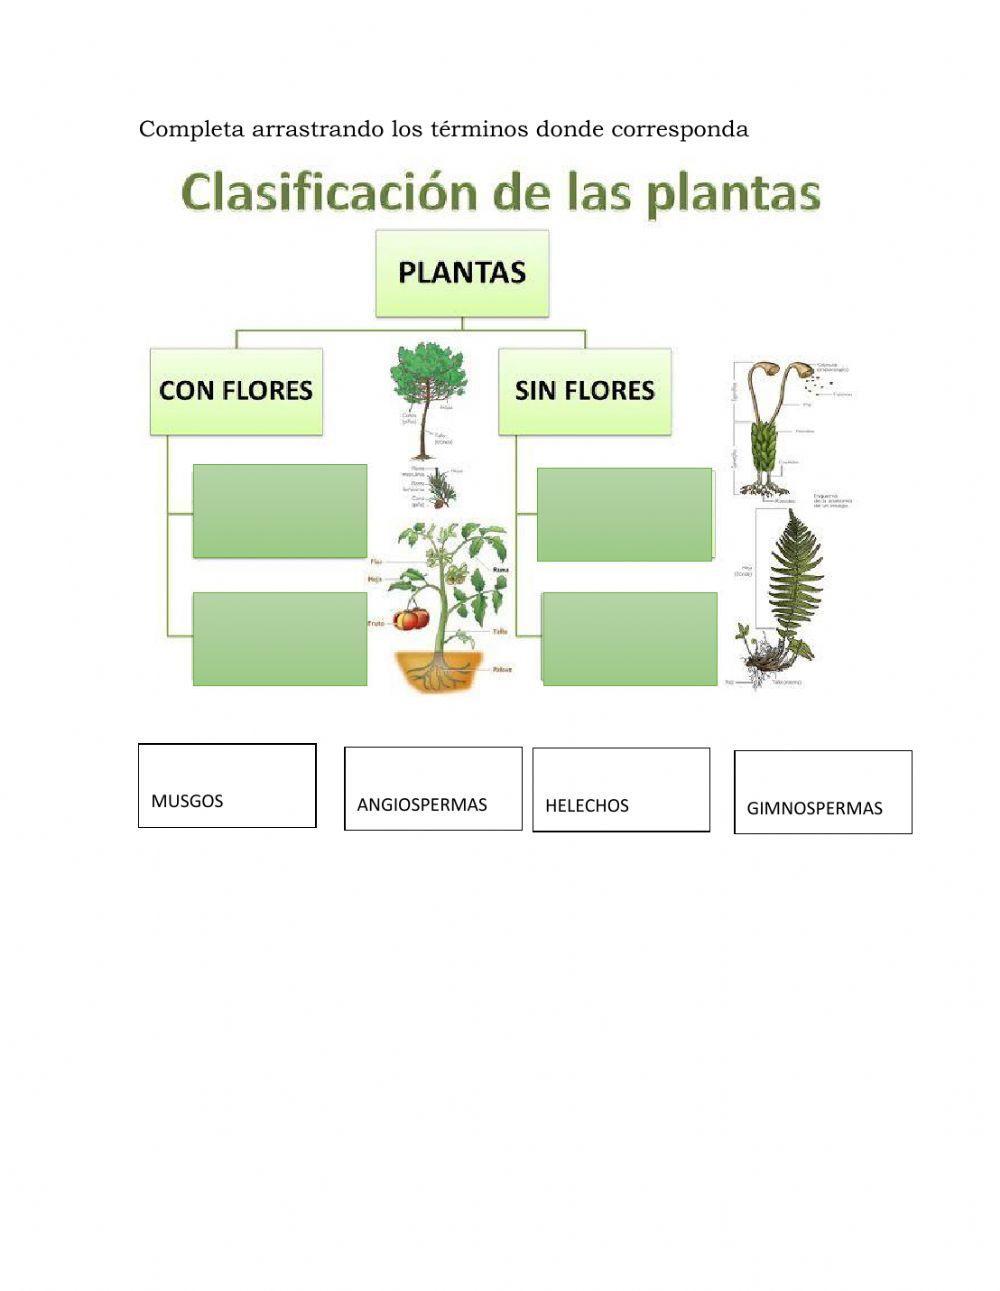 Clasificaciòn de las plantas